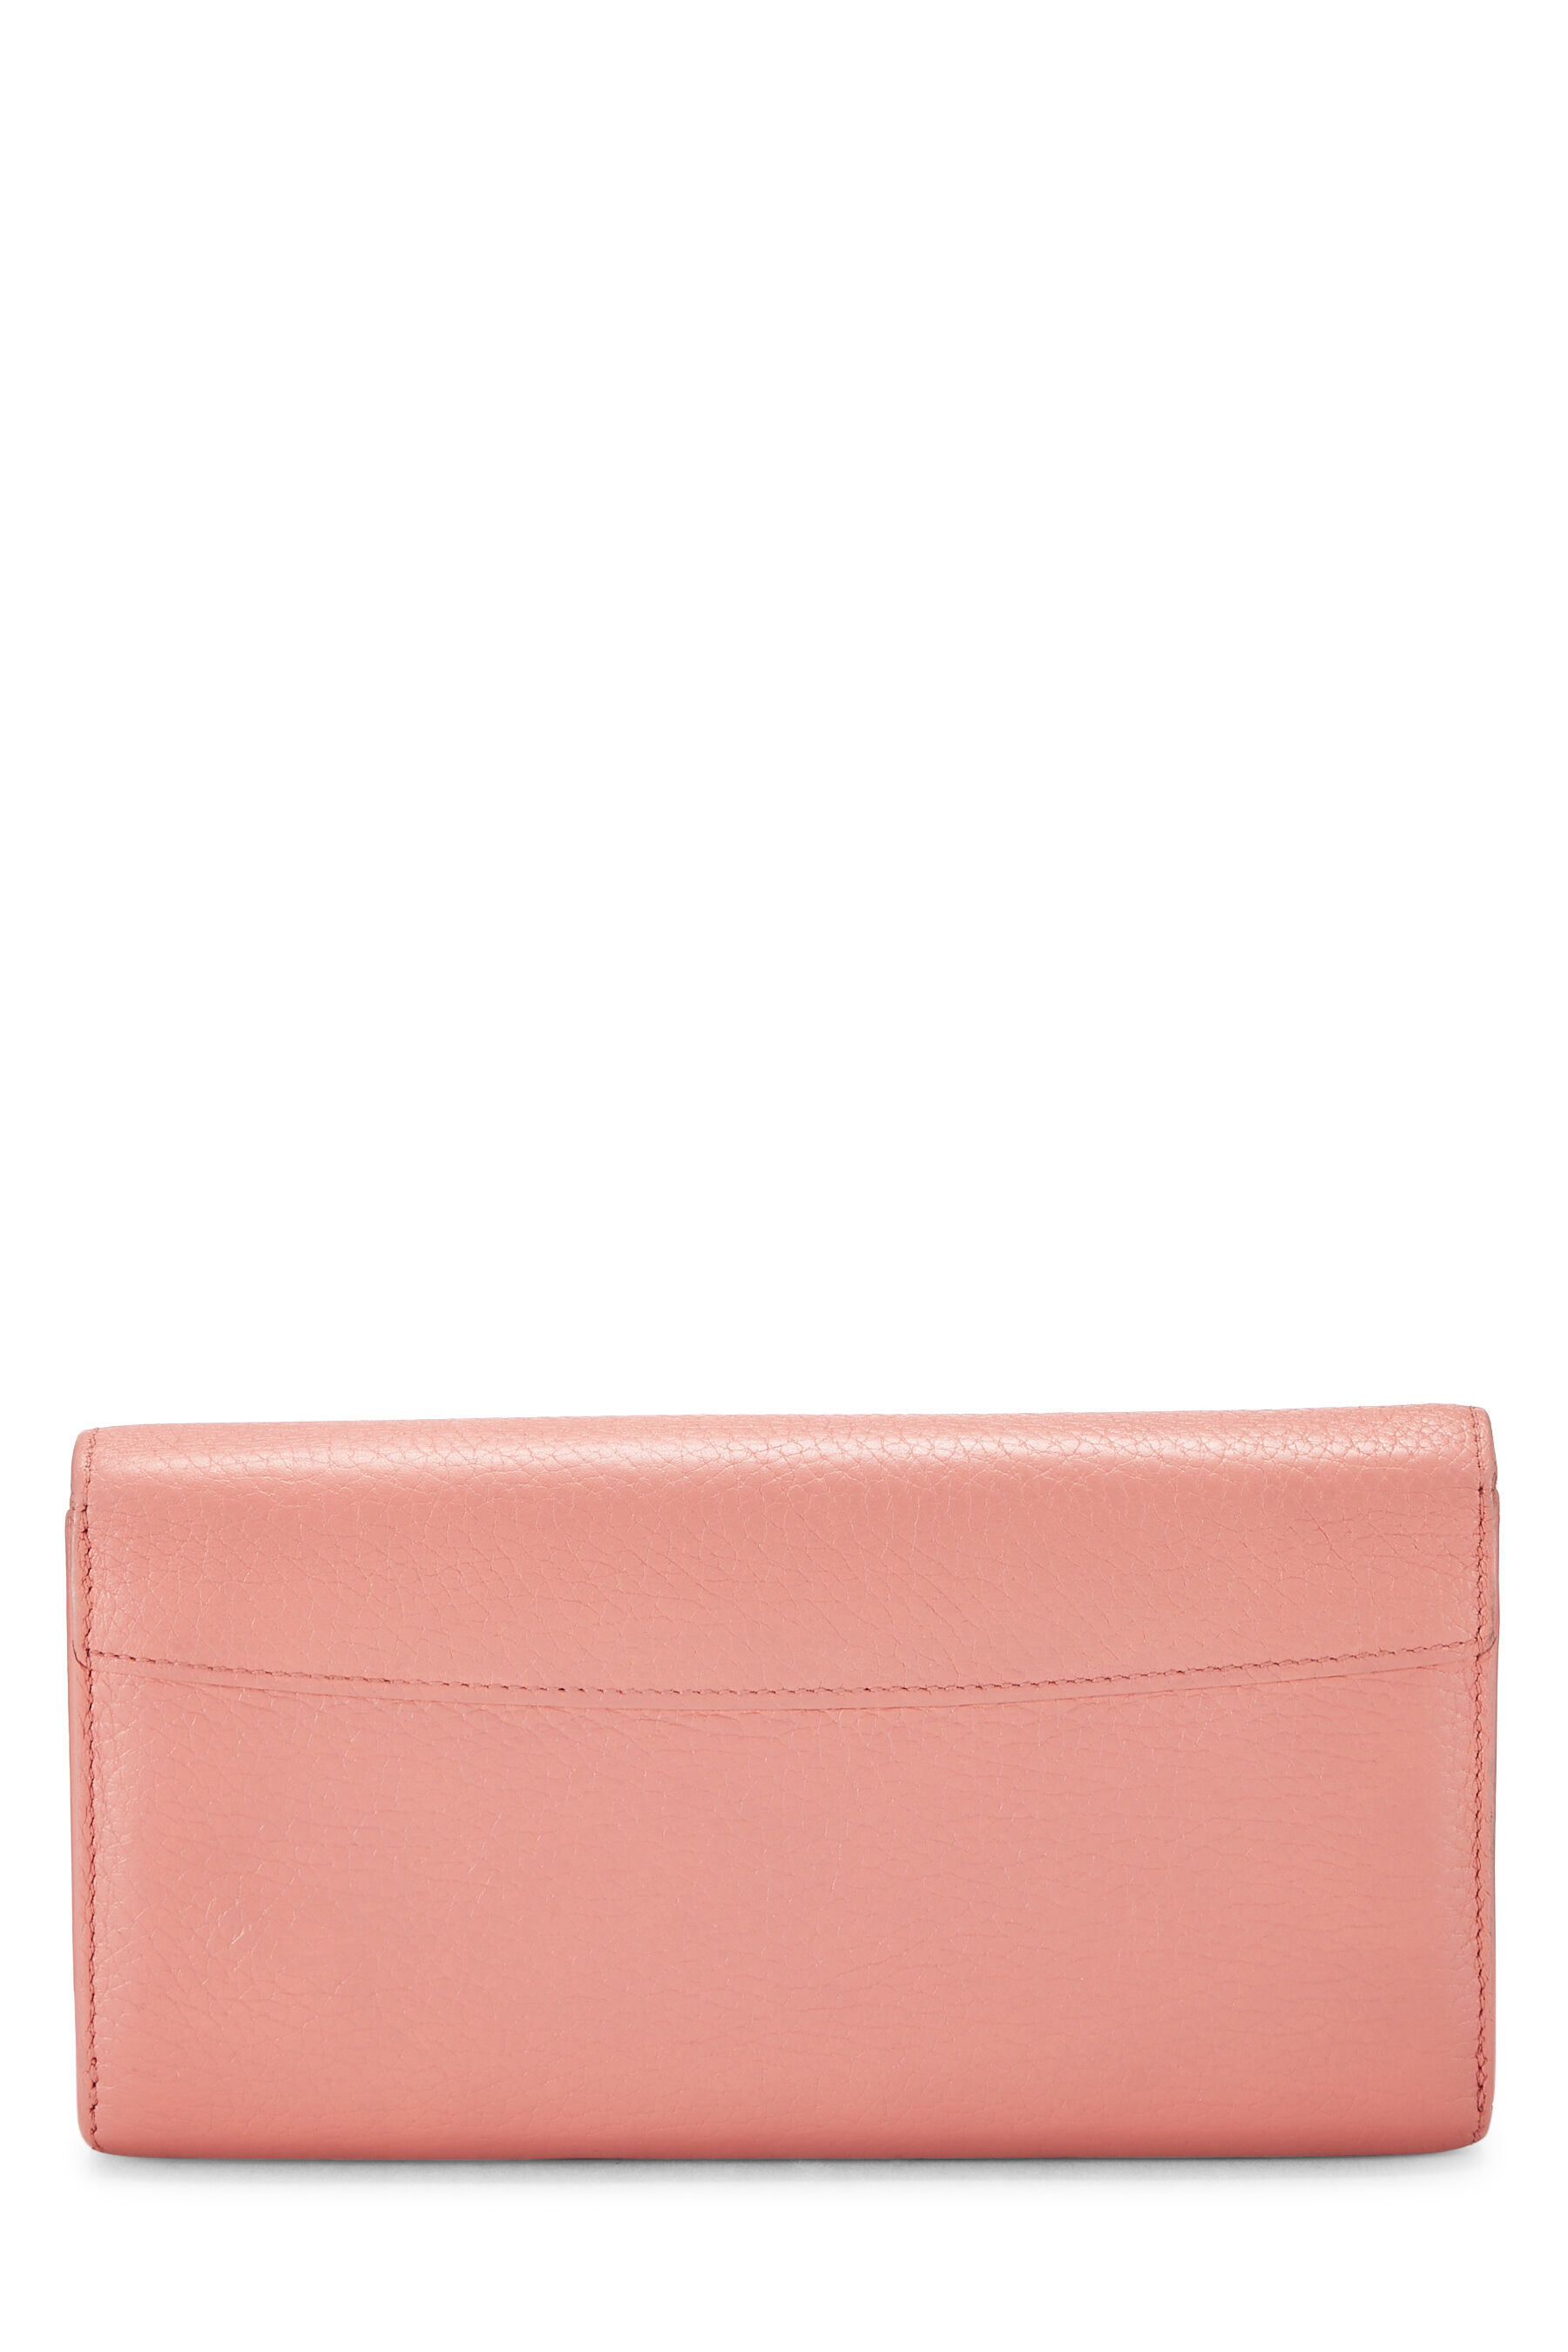 LOUIS VUITTON Capucines Wallet Purse Black Pink Taurillon Leather M64105